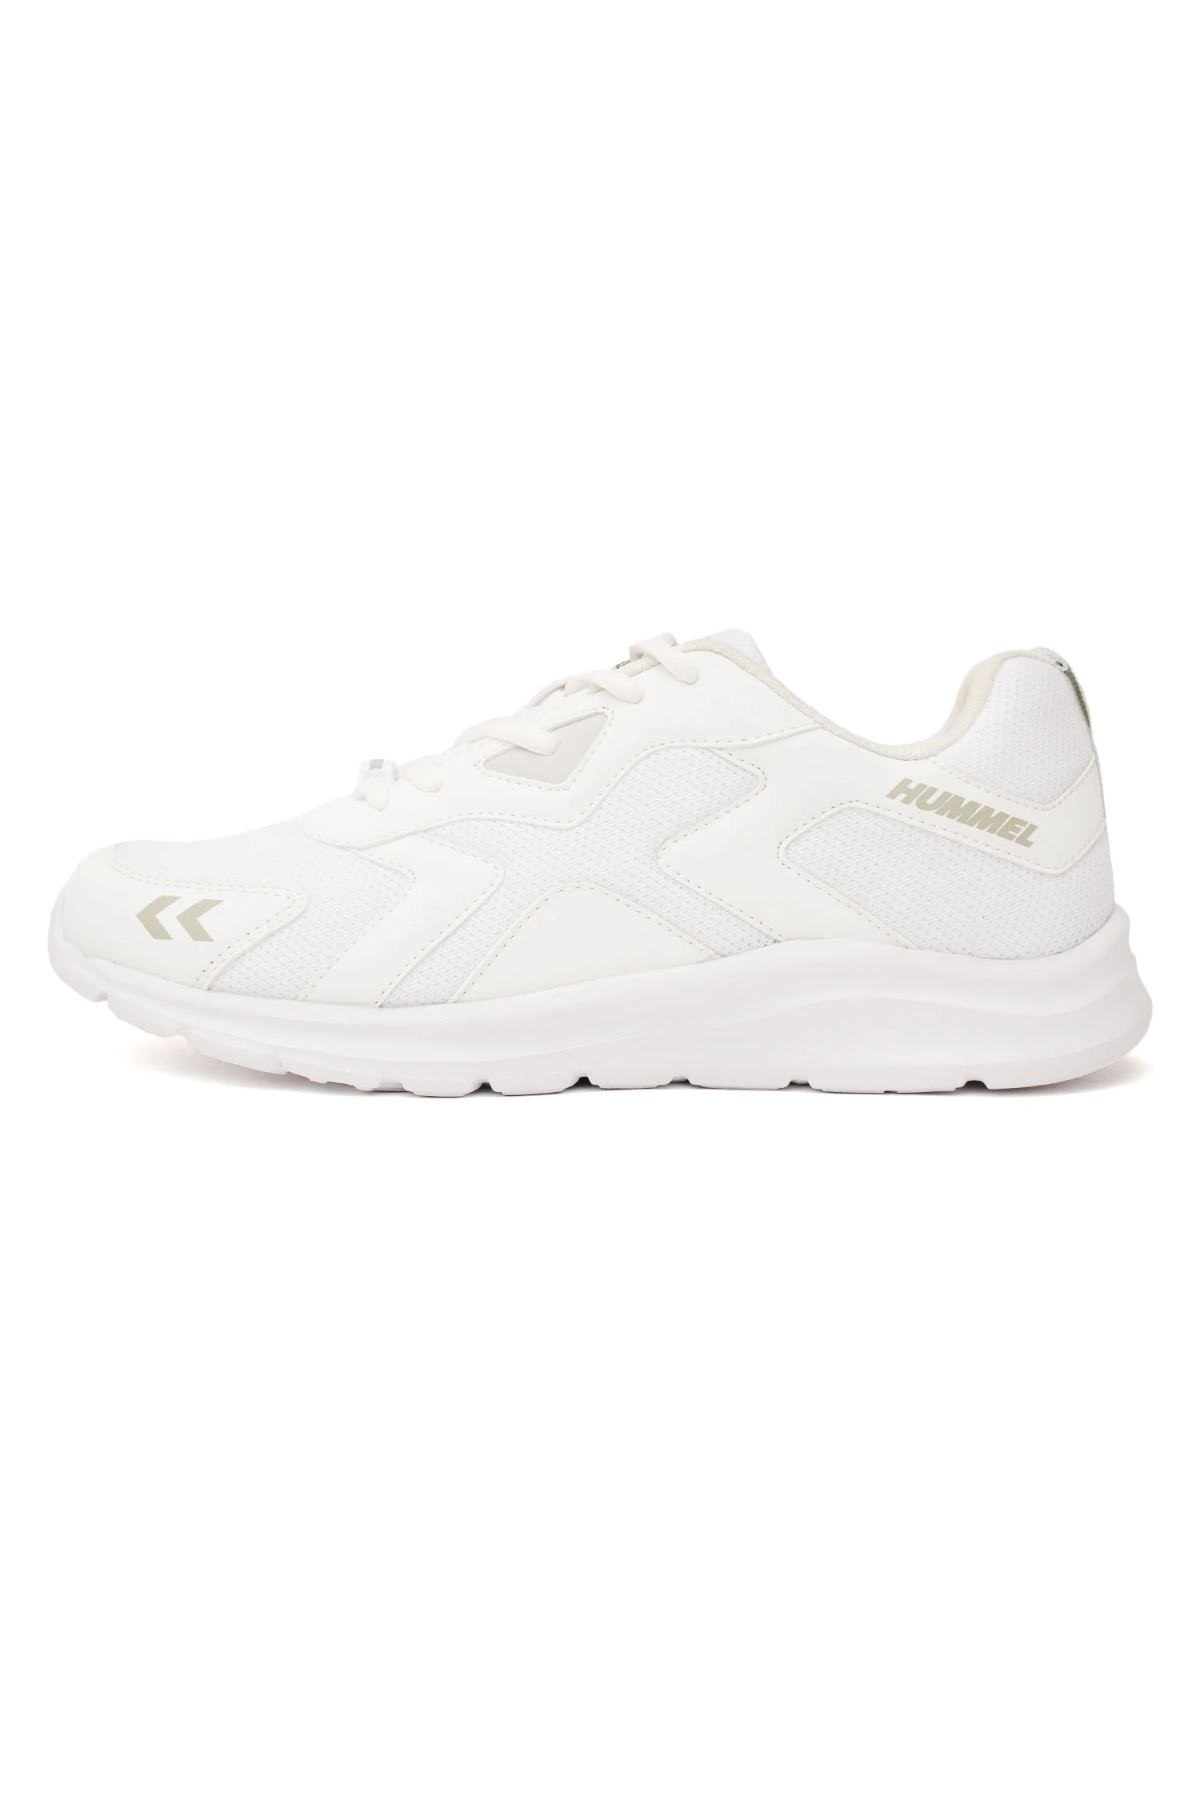 Hummel Hml Carıo Kadın Beyaz Spor Ayakkabı - 900465-9001